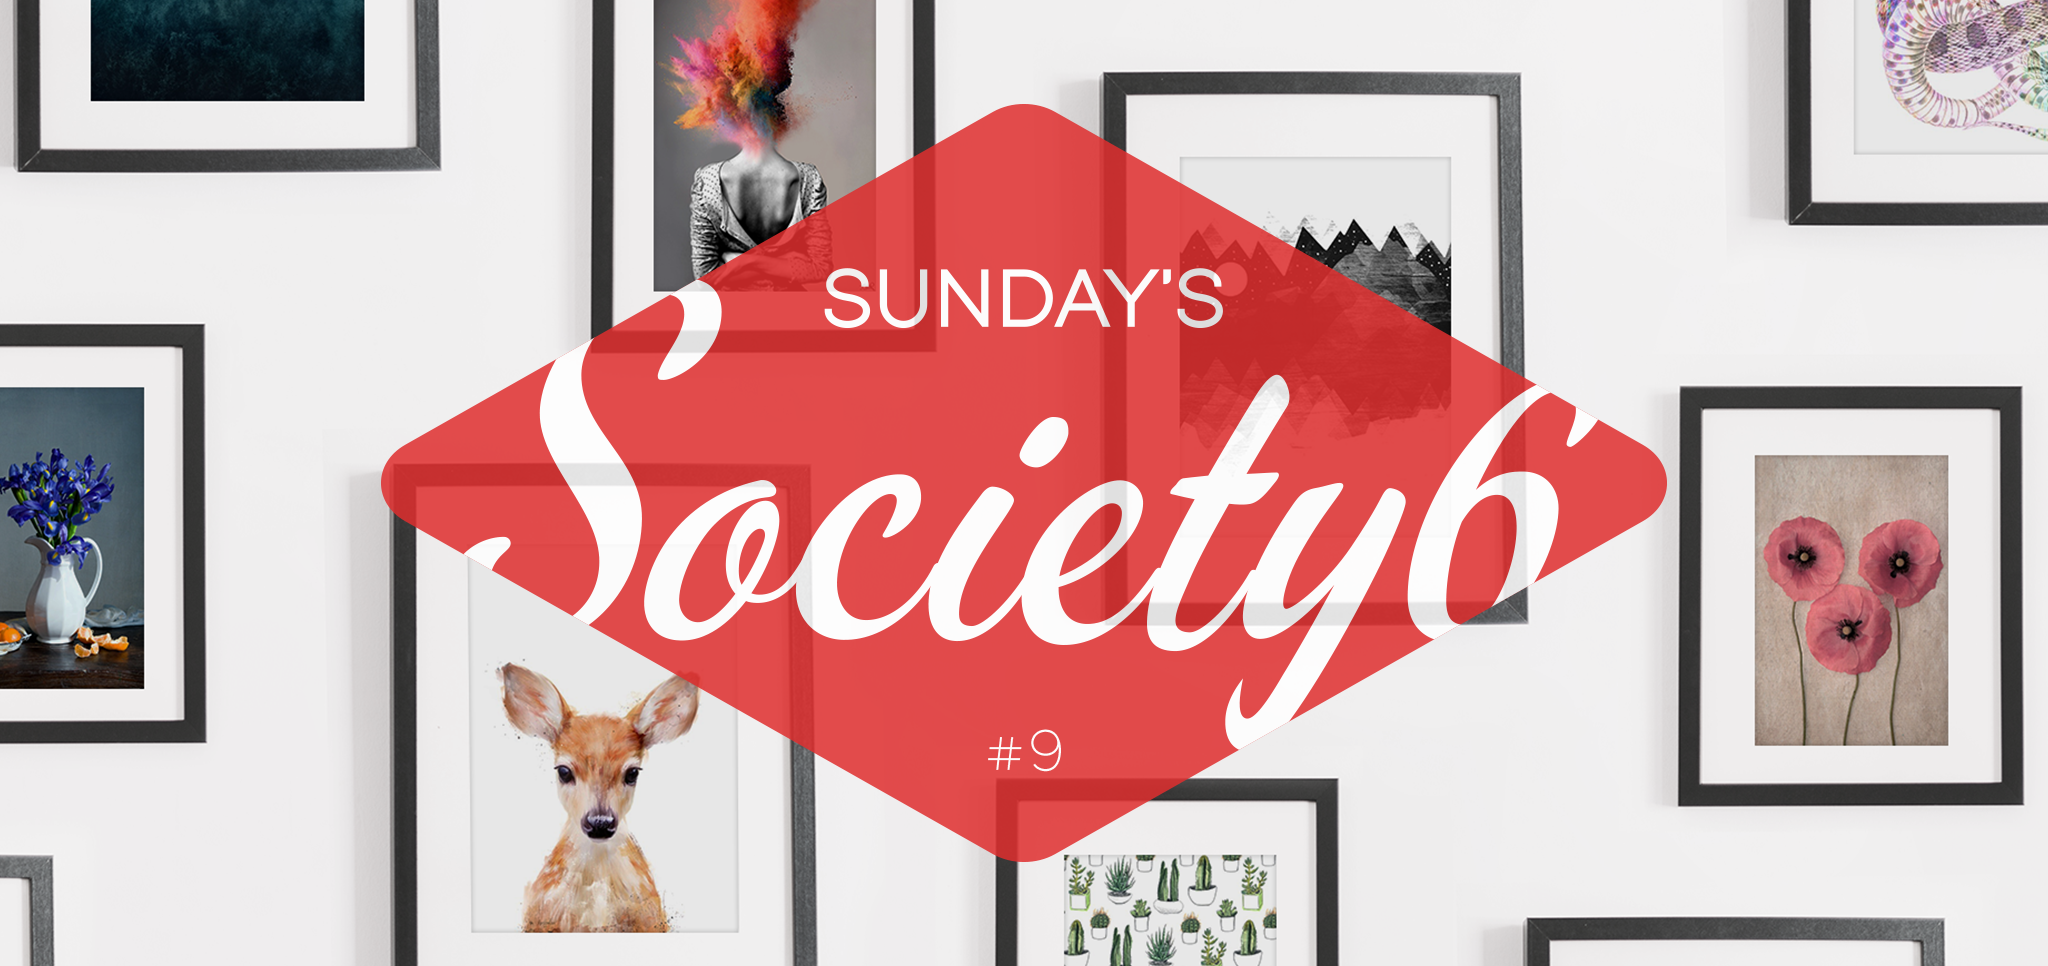 Sunday’s Society6 – #9